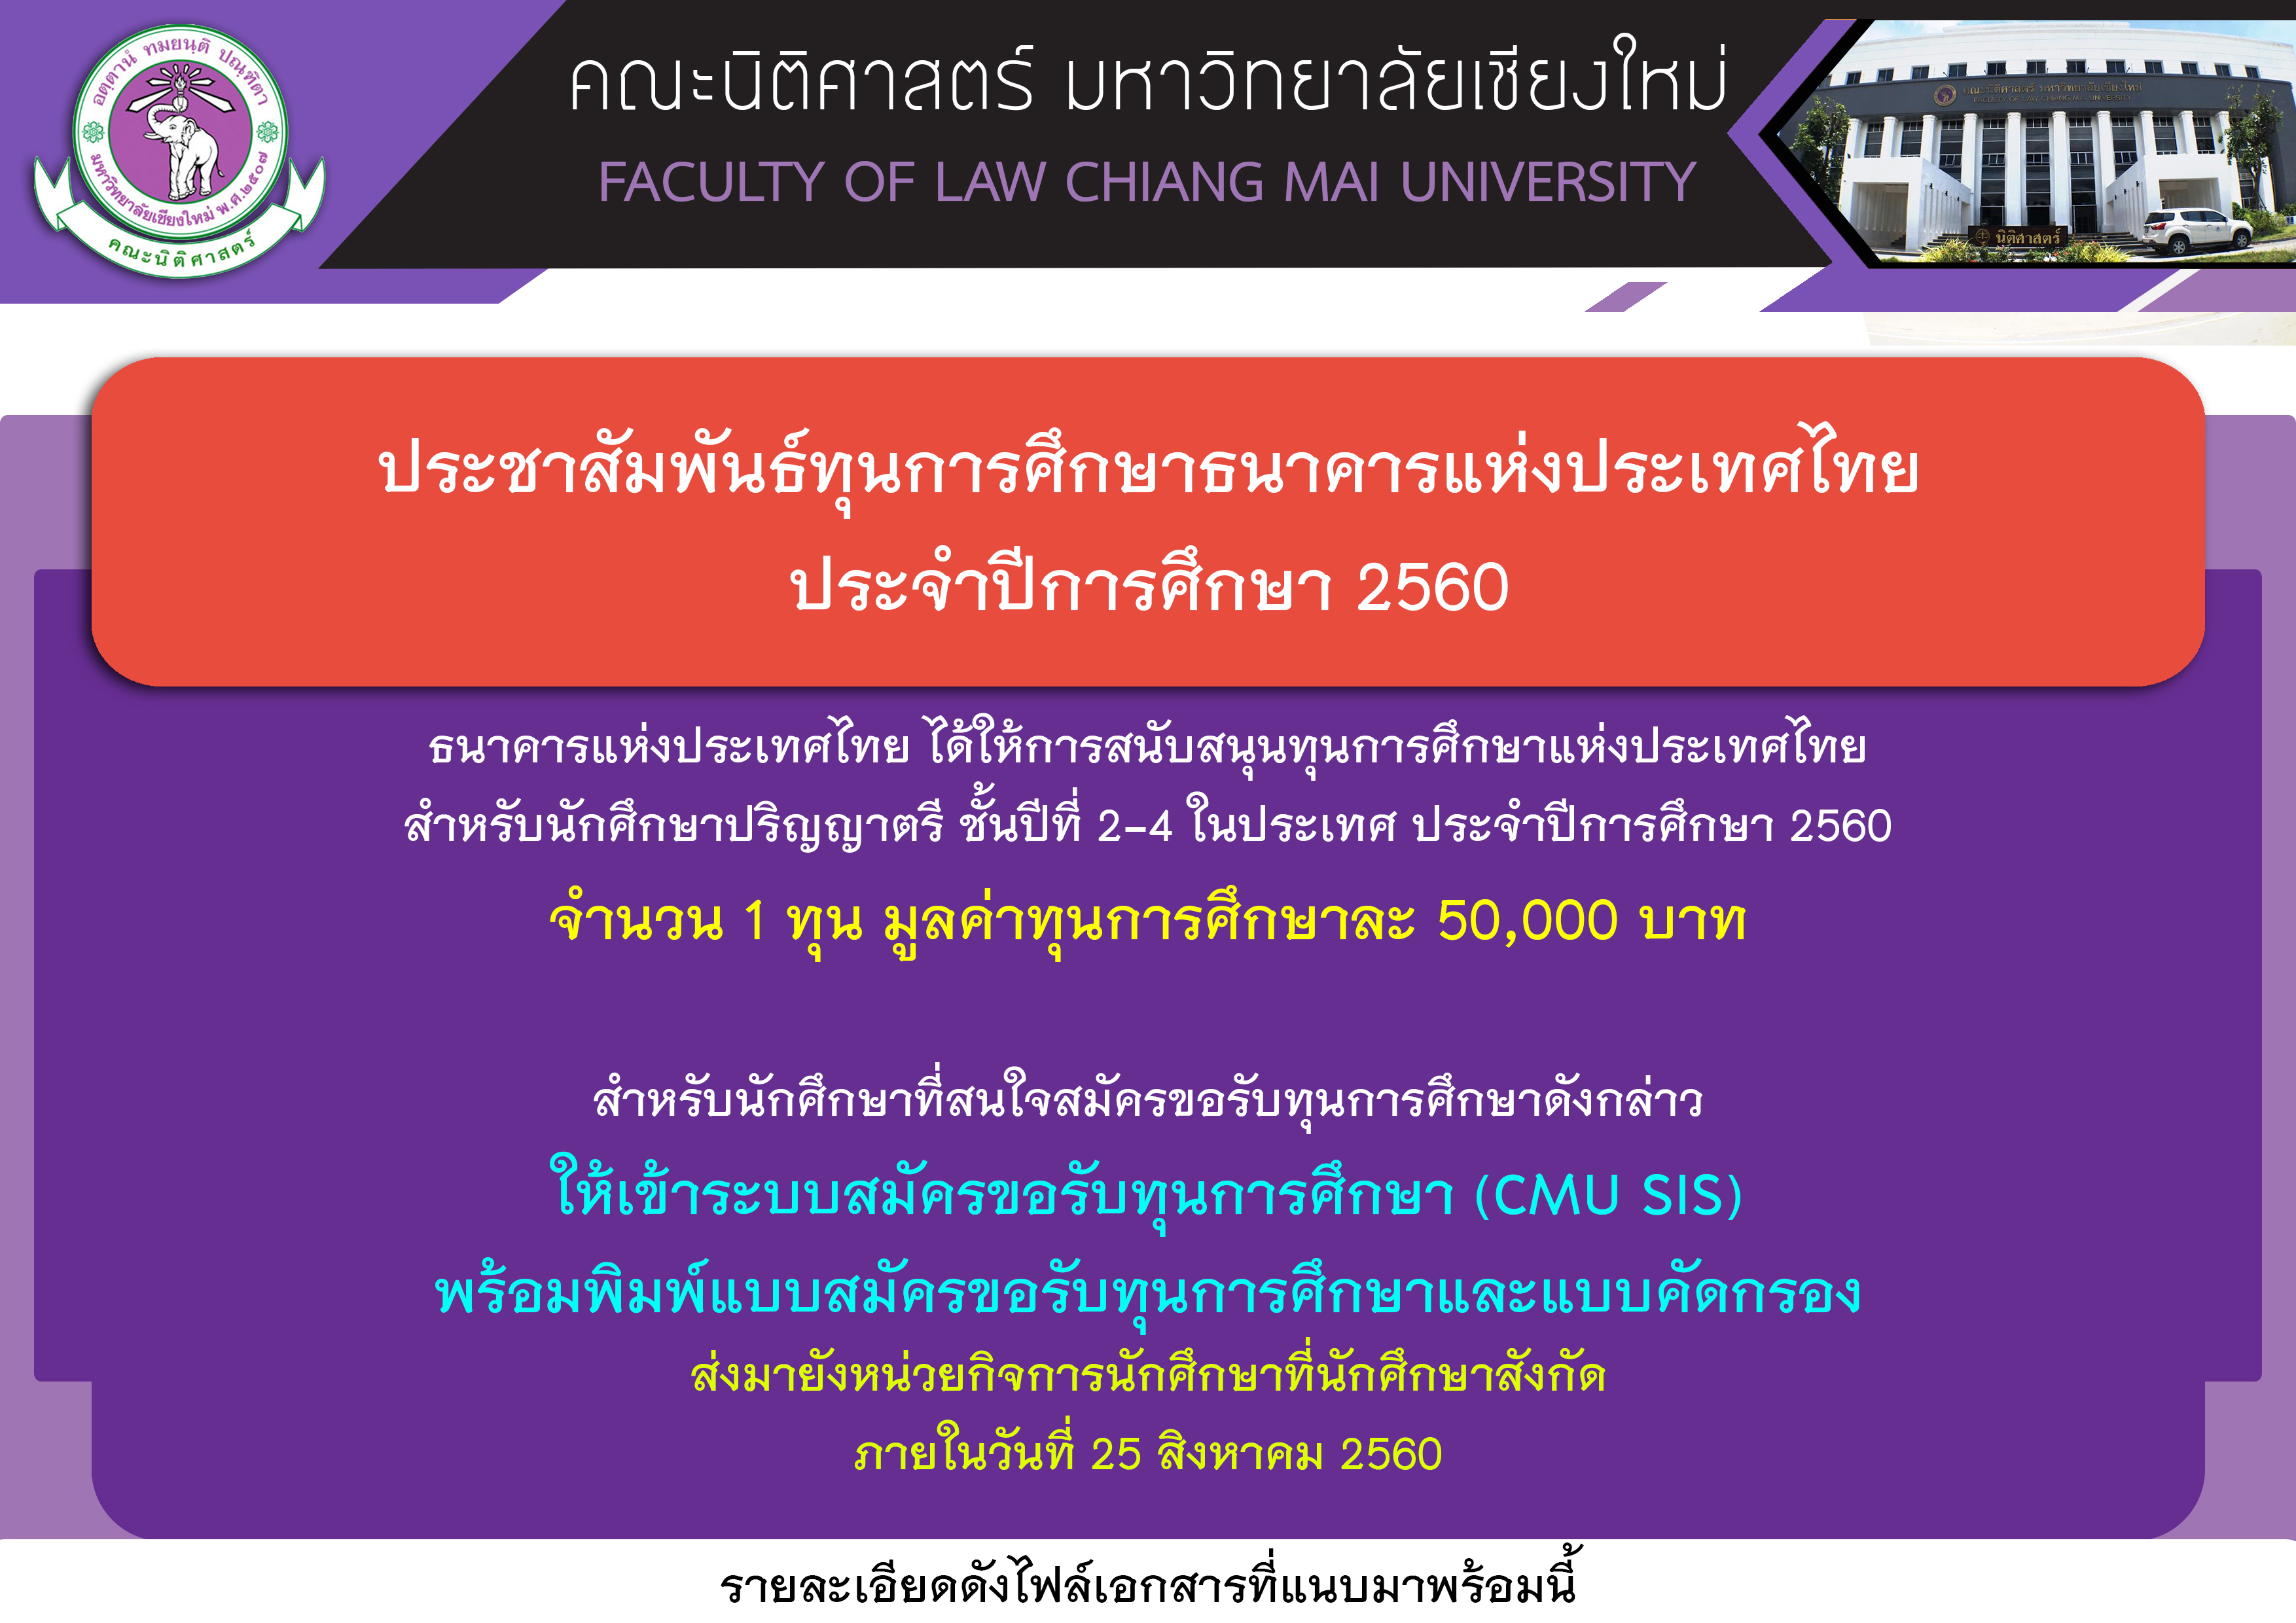 ประชาสัมพันธ์ทุนการศึกษาธนาคารแห่งประเทศไทย ประจำปีการศึกษา 2560